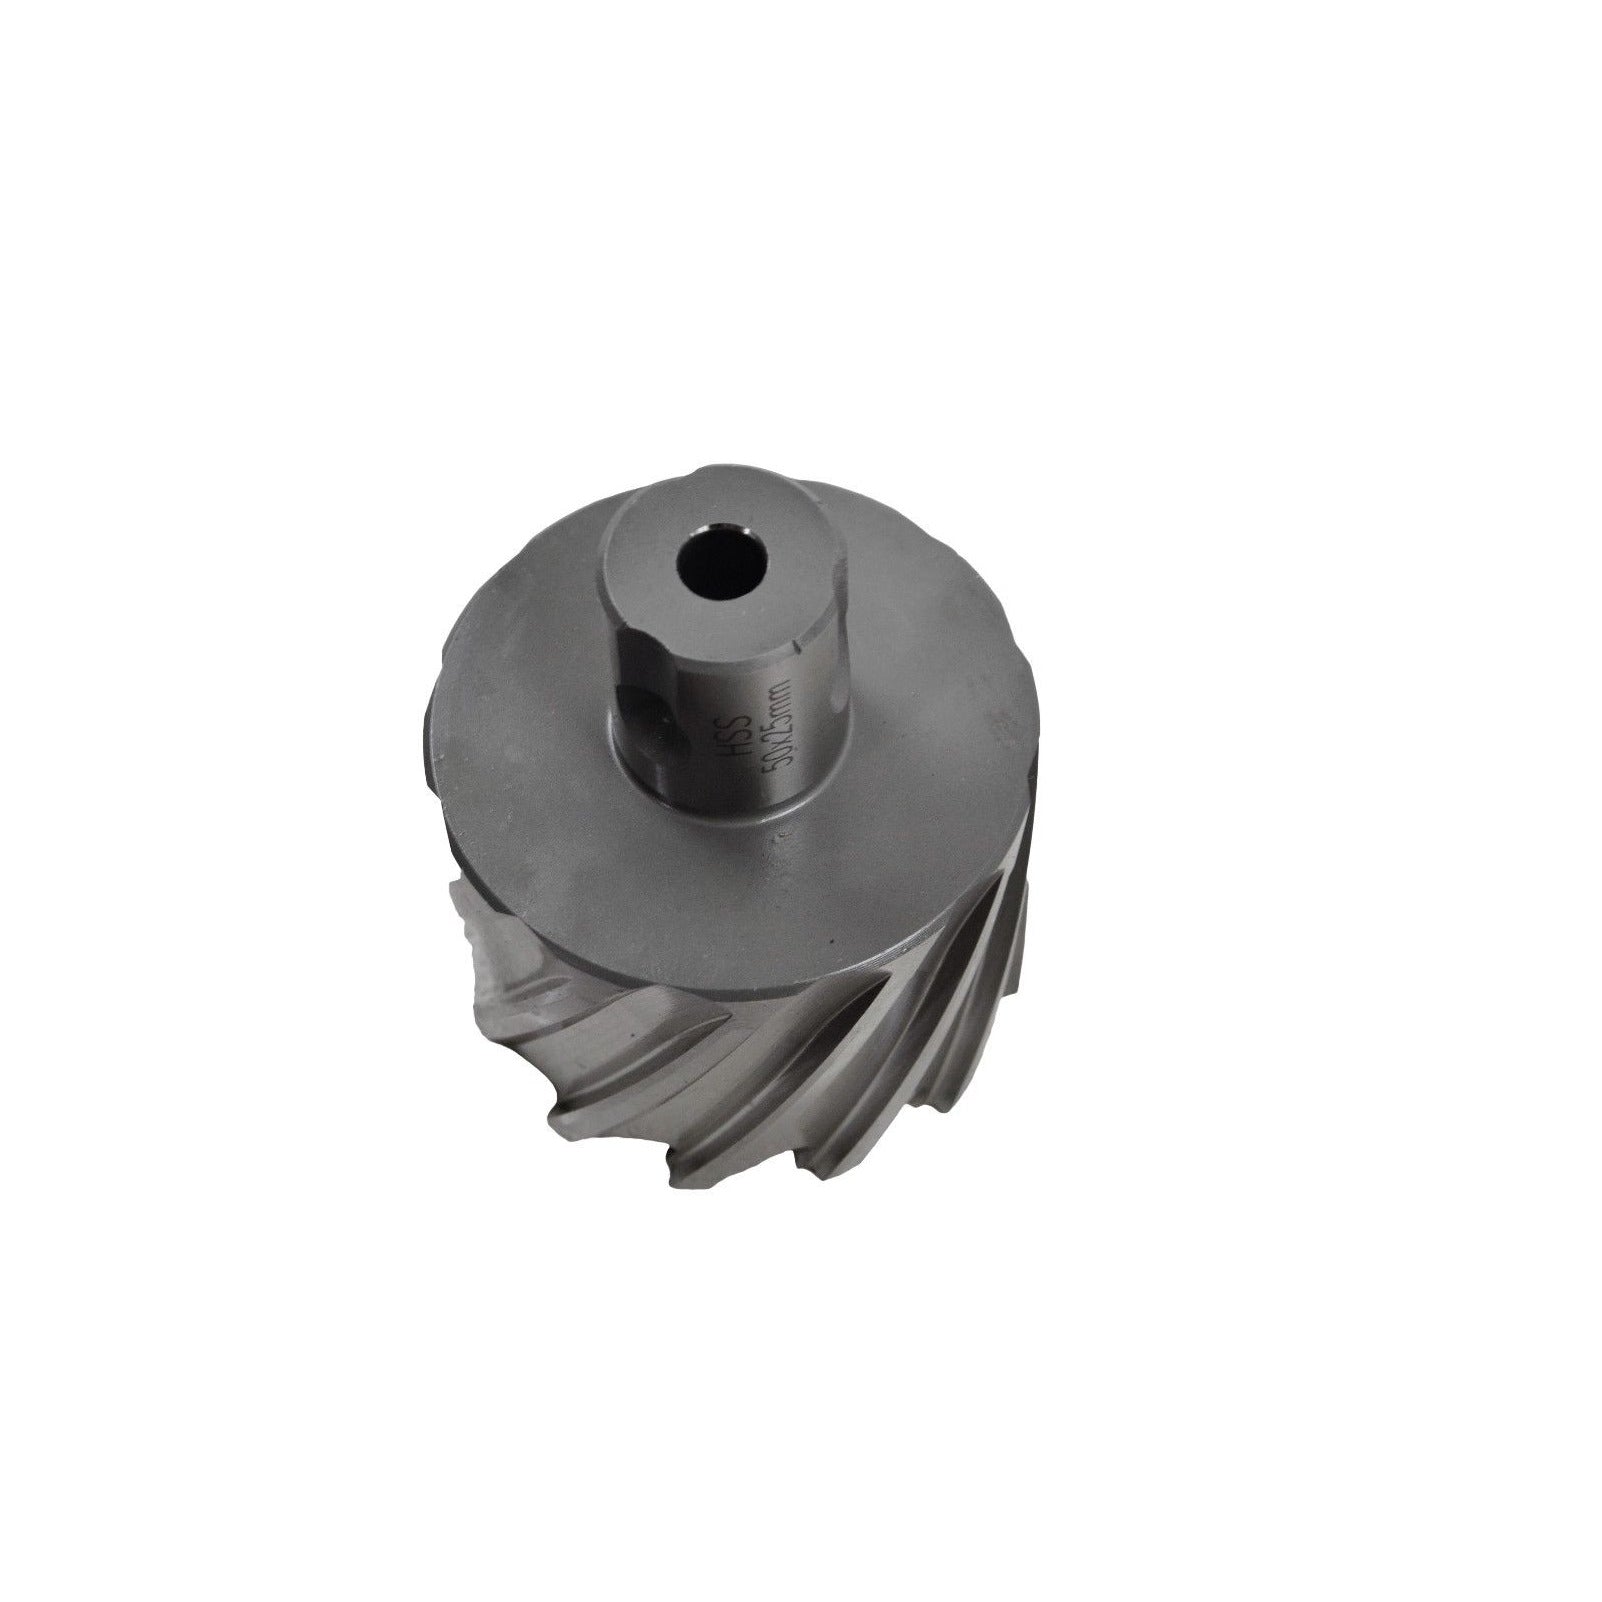 50x25 mm HSS Annular Broach Cutter ; Rotabroach Magnetic Drill ; Universal Shank